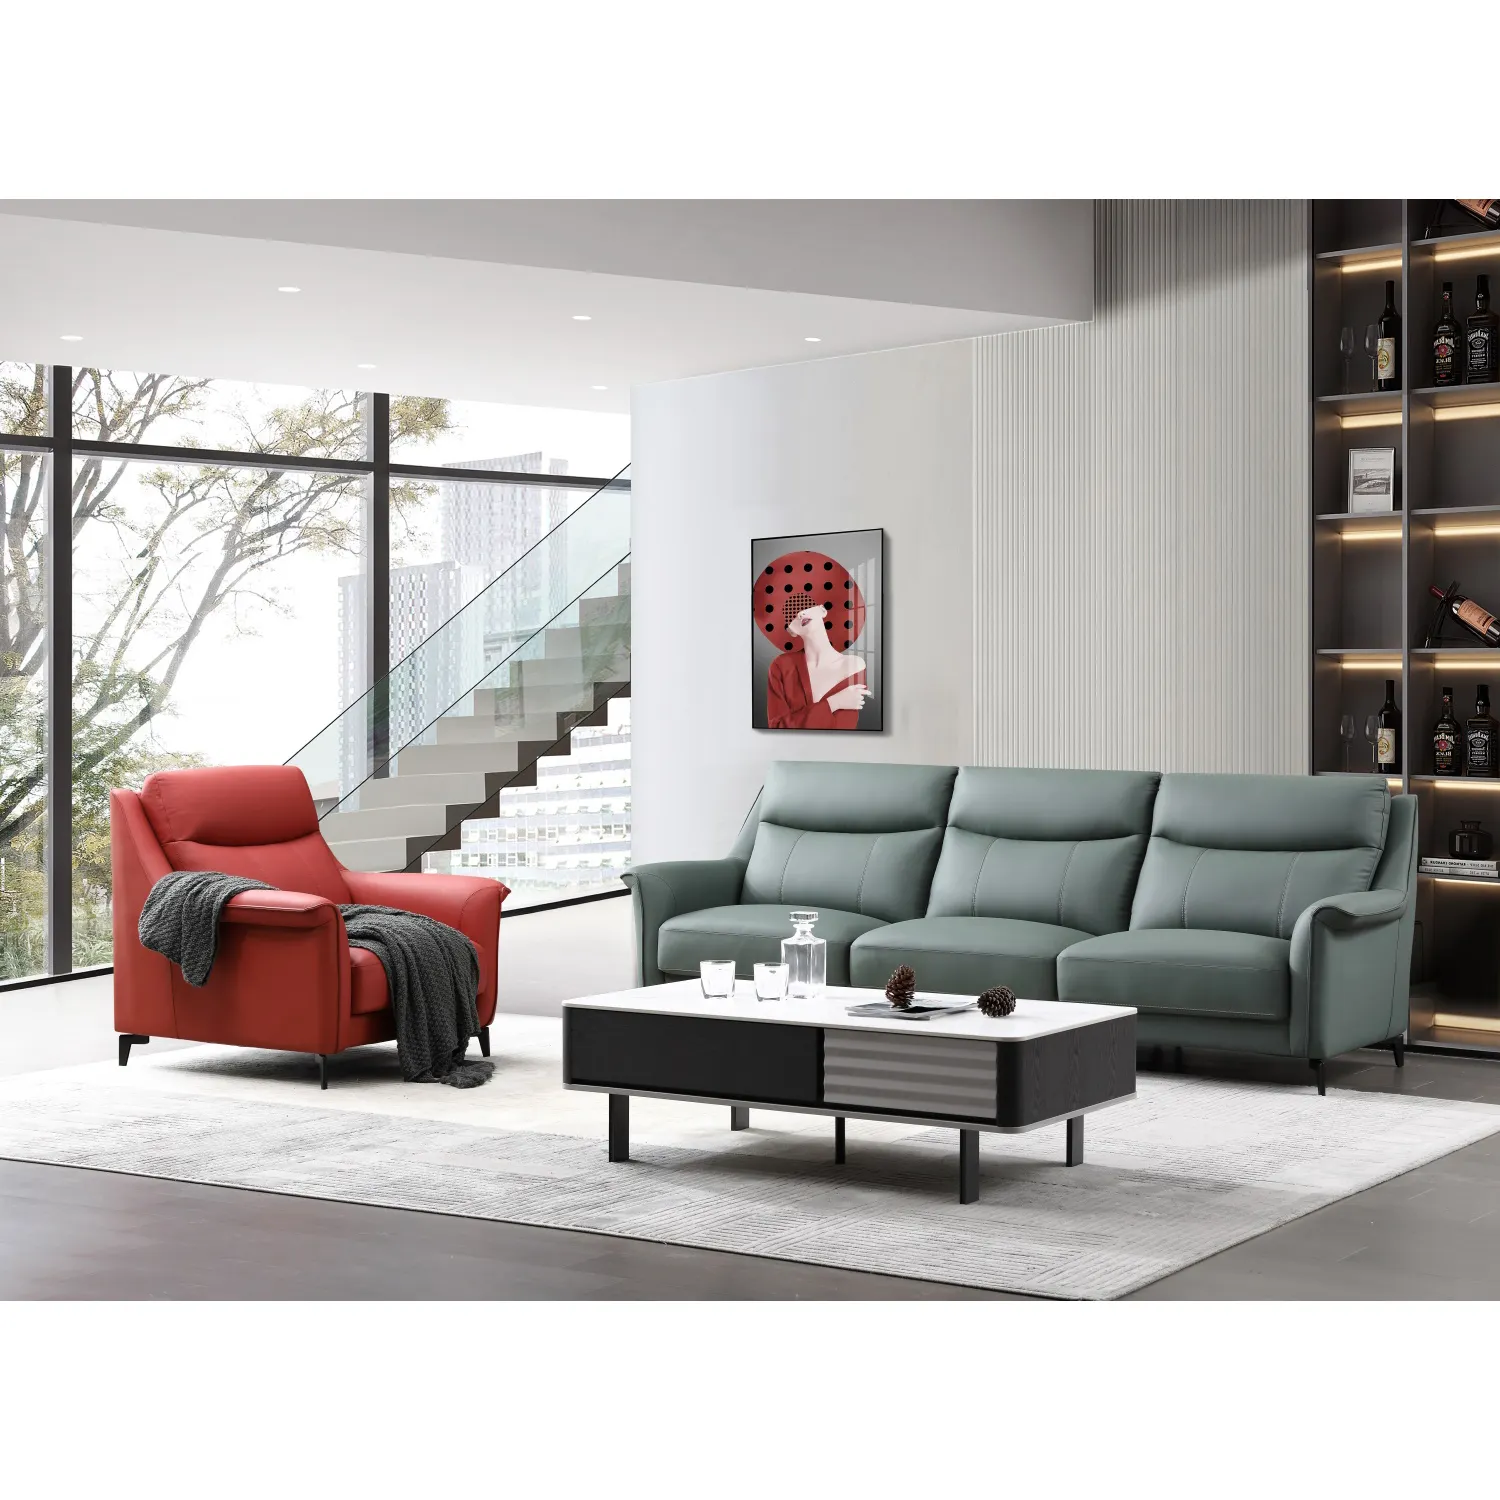 Sofá de cuero de muchos colores diferentes, muebles de sala de estar, sofá de cuero de 3 plazas